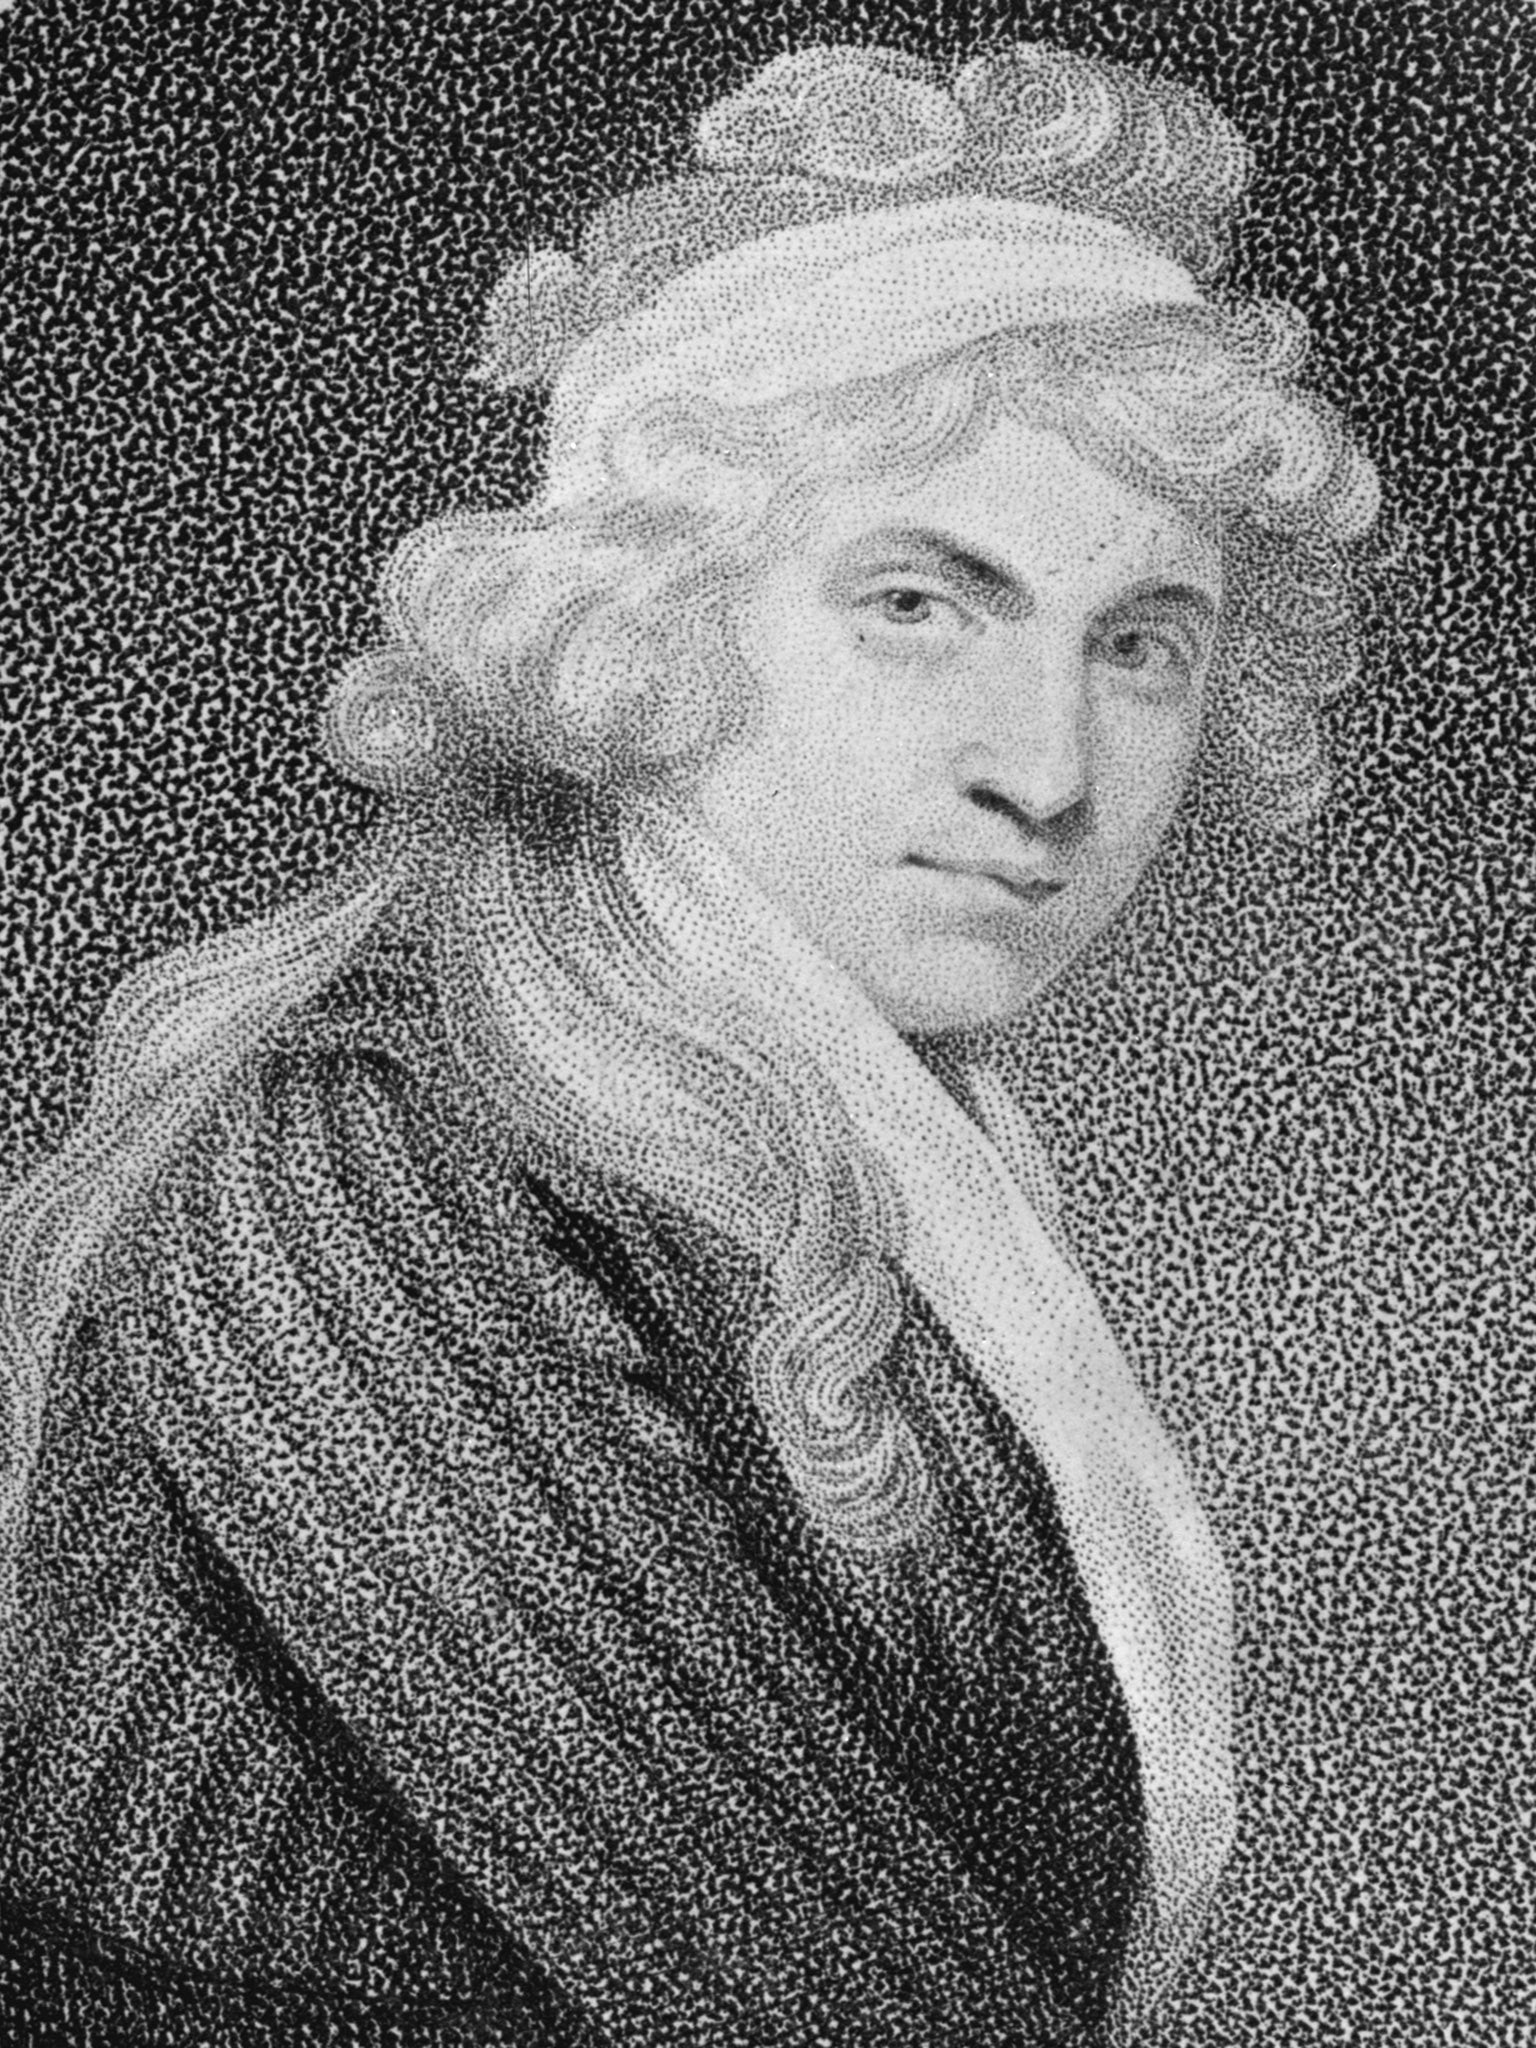 Mary Wollstonecraft (1759-1797) argued that women were not inferior to men